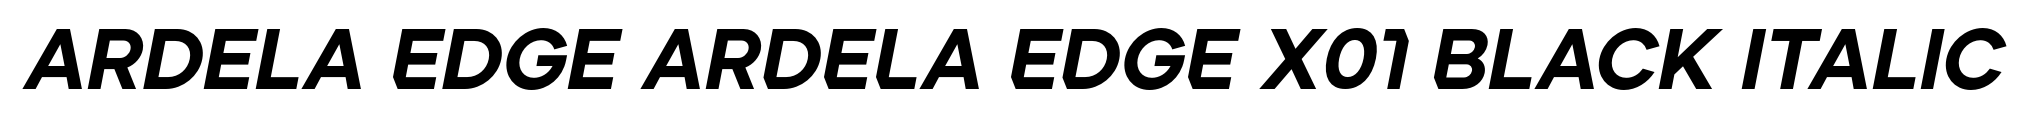 Ardela Edge ARDELA EDGE X01 Black Italic image